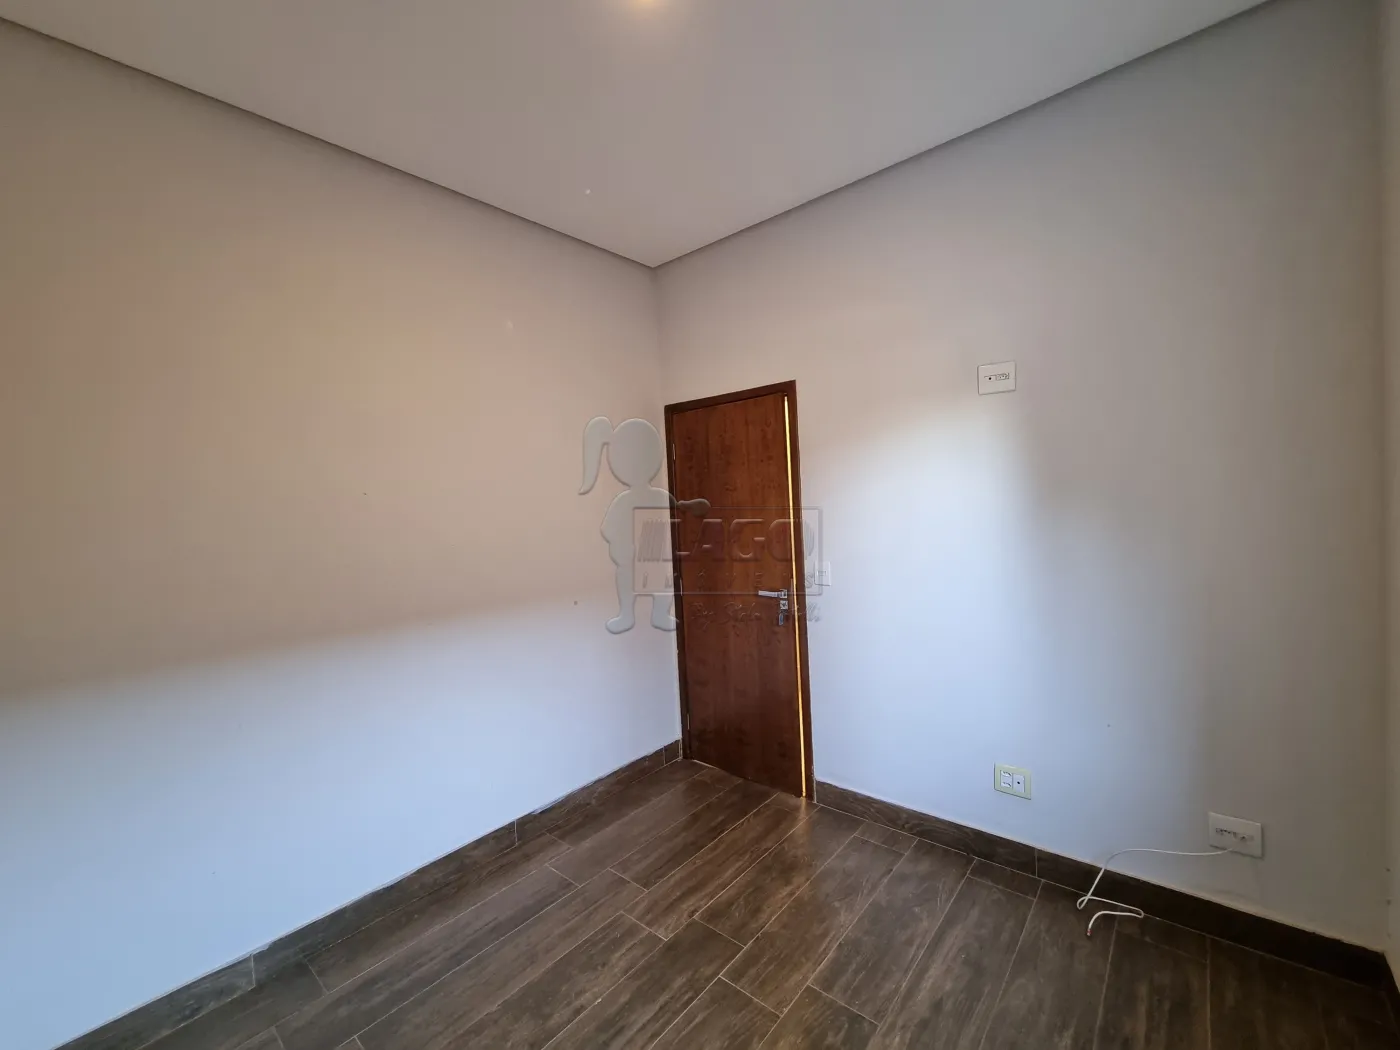 Comprar Casa condomínio / Padrão em Ribeirão Preto R$ 1.300.000,00 - Foto 10